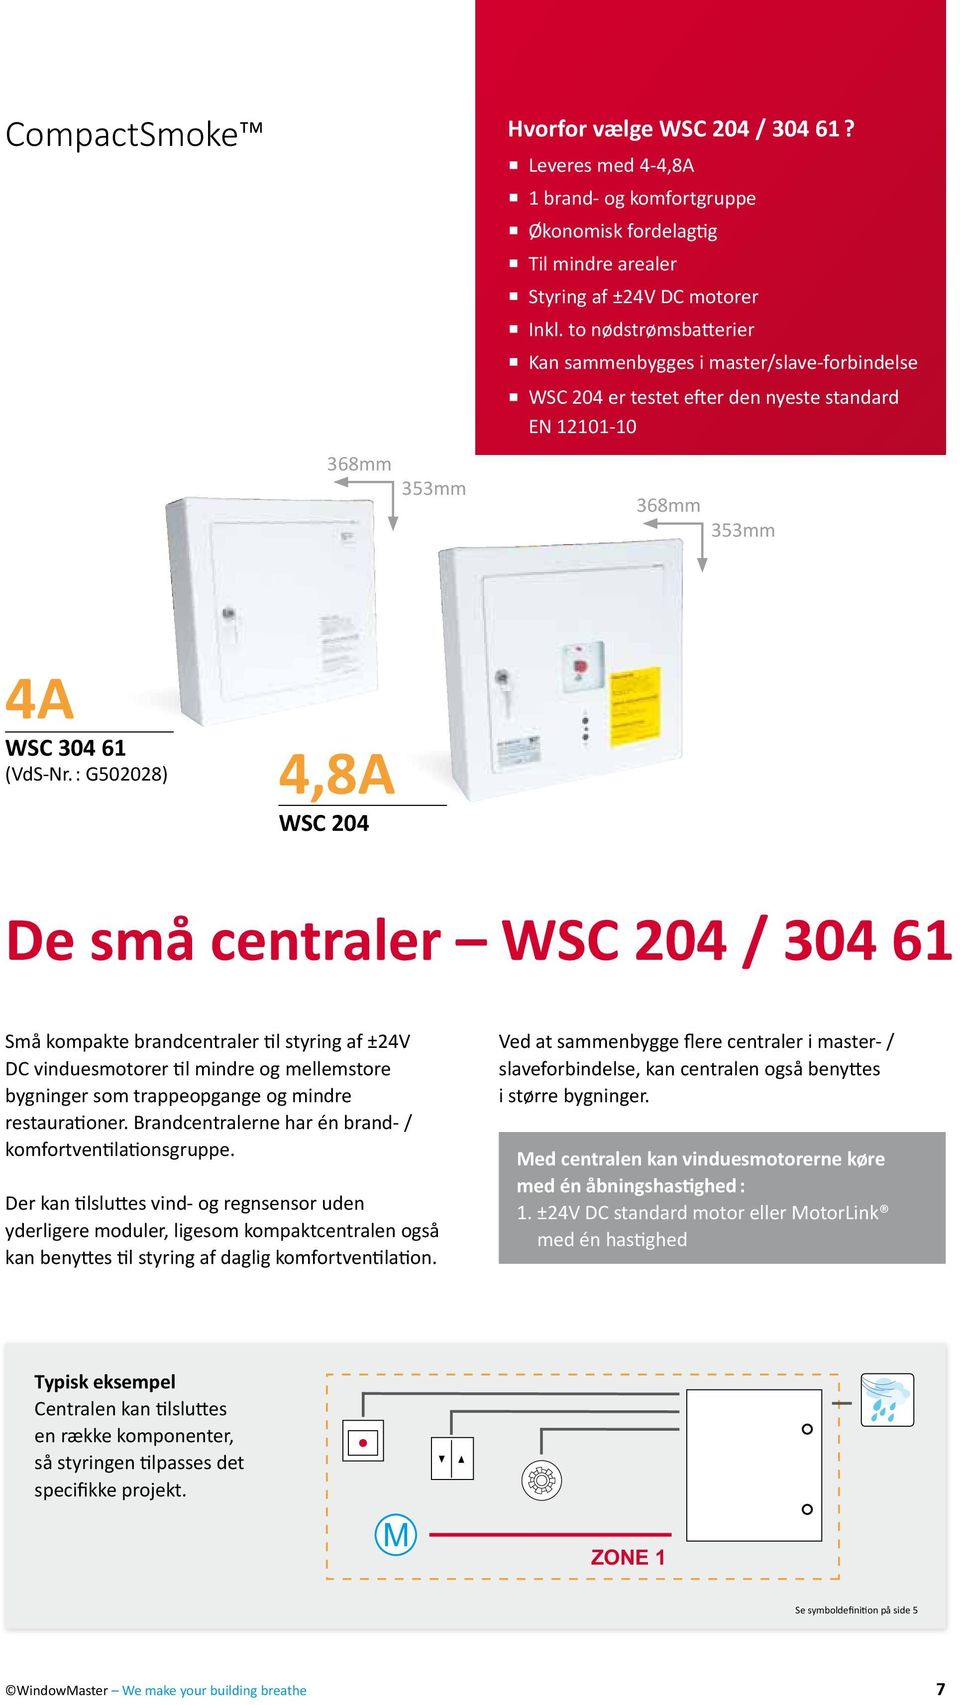 : G502028) 4,8A WSC 204 De små centraler WSC 204 / 304 61 Små kompakte brandcentraler til styring af ±24V DC vinduesmotorer til mindre og mellemstore bygninger som trappeopgange og mindre